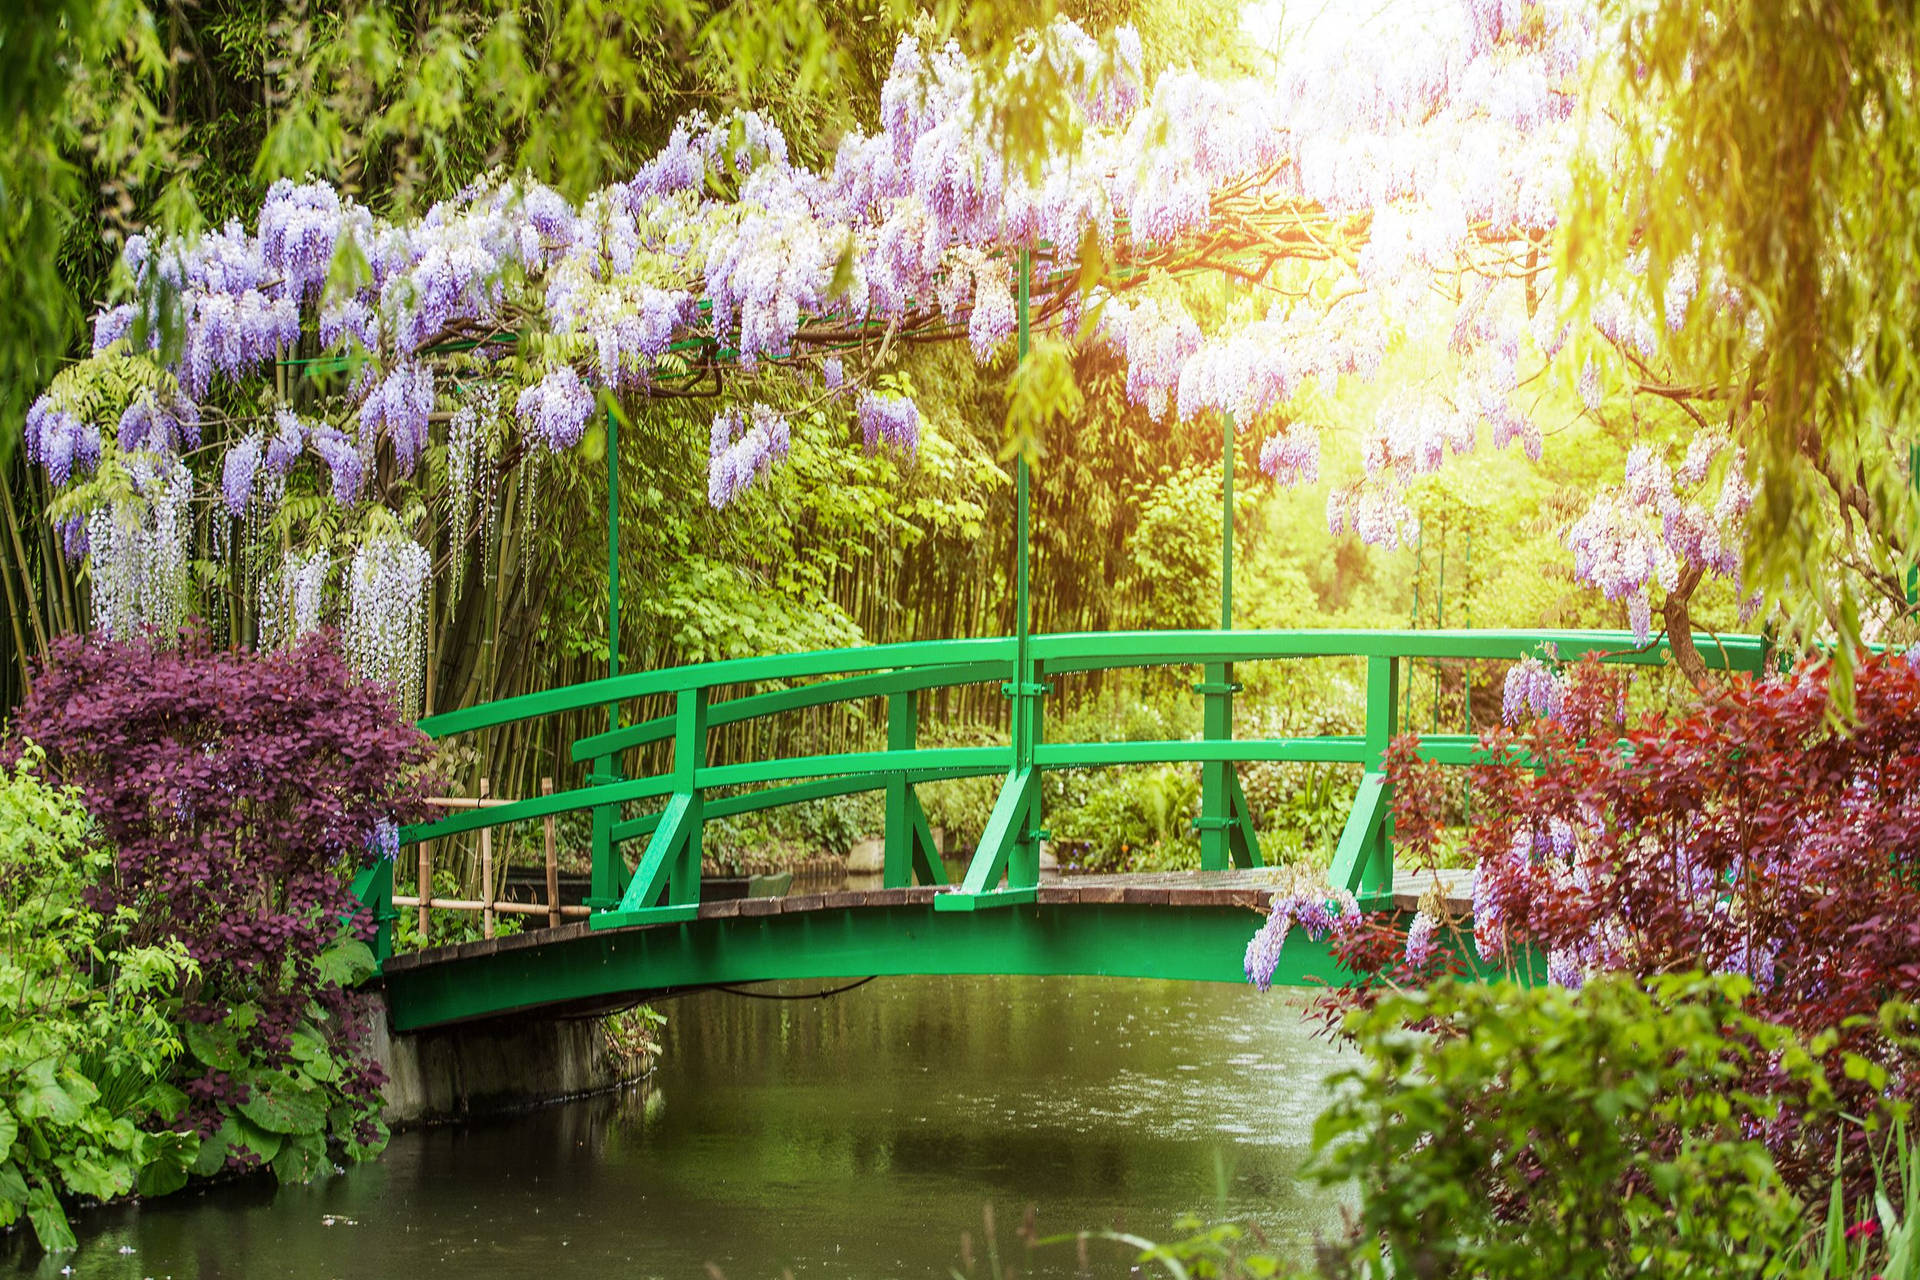 France's Monet's Garden Background